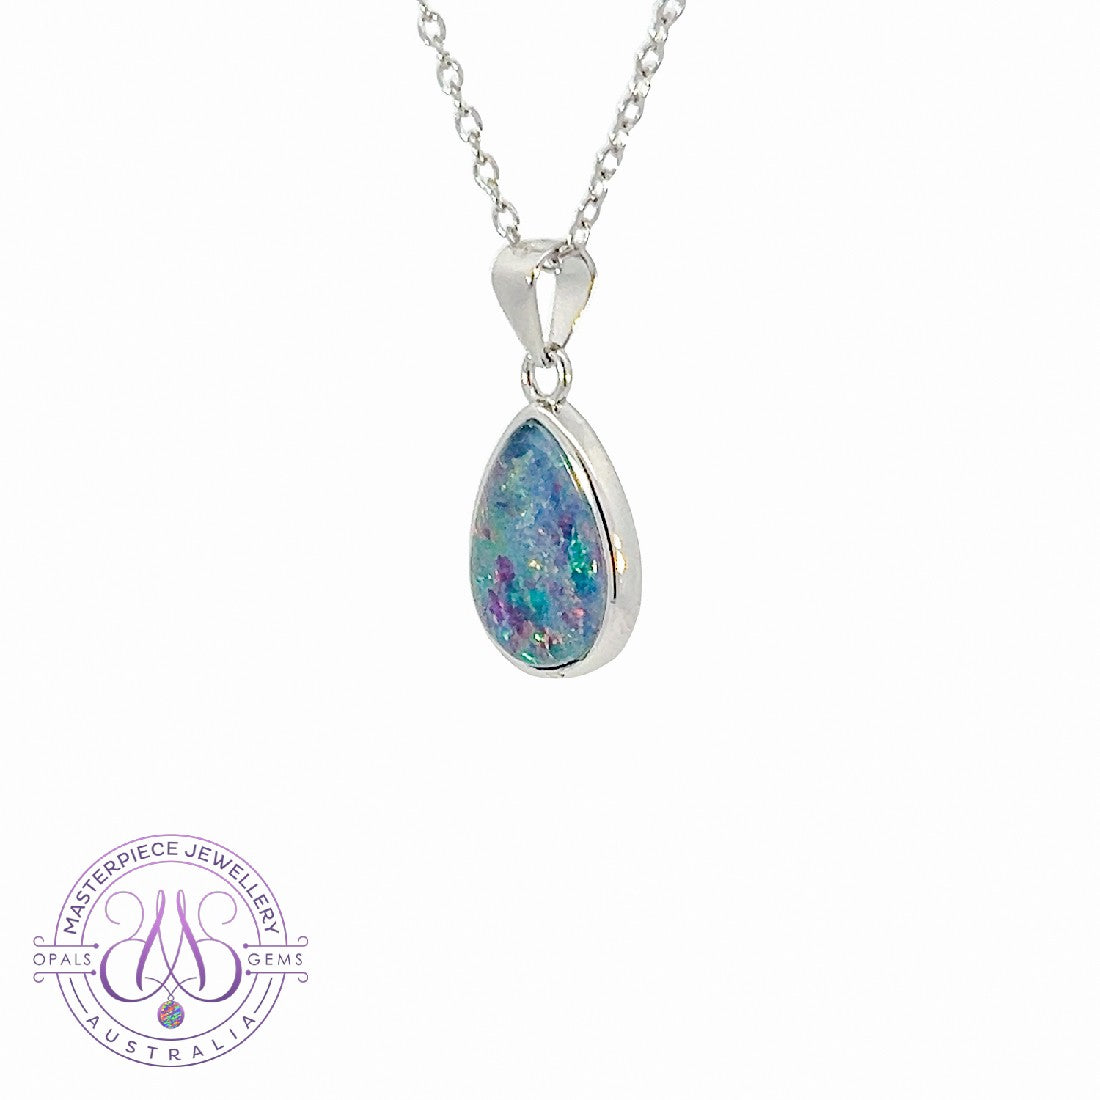 One Sterling Silver Pearshape 10x7mm Opal triplet pendant - Masterpiece Jewellery Opal & Gems Sydney Australia | Online Shop